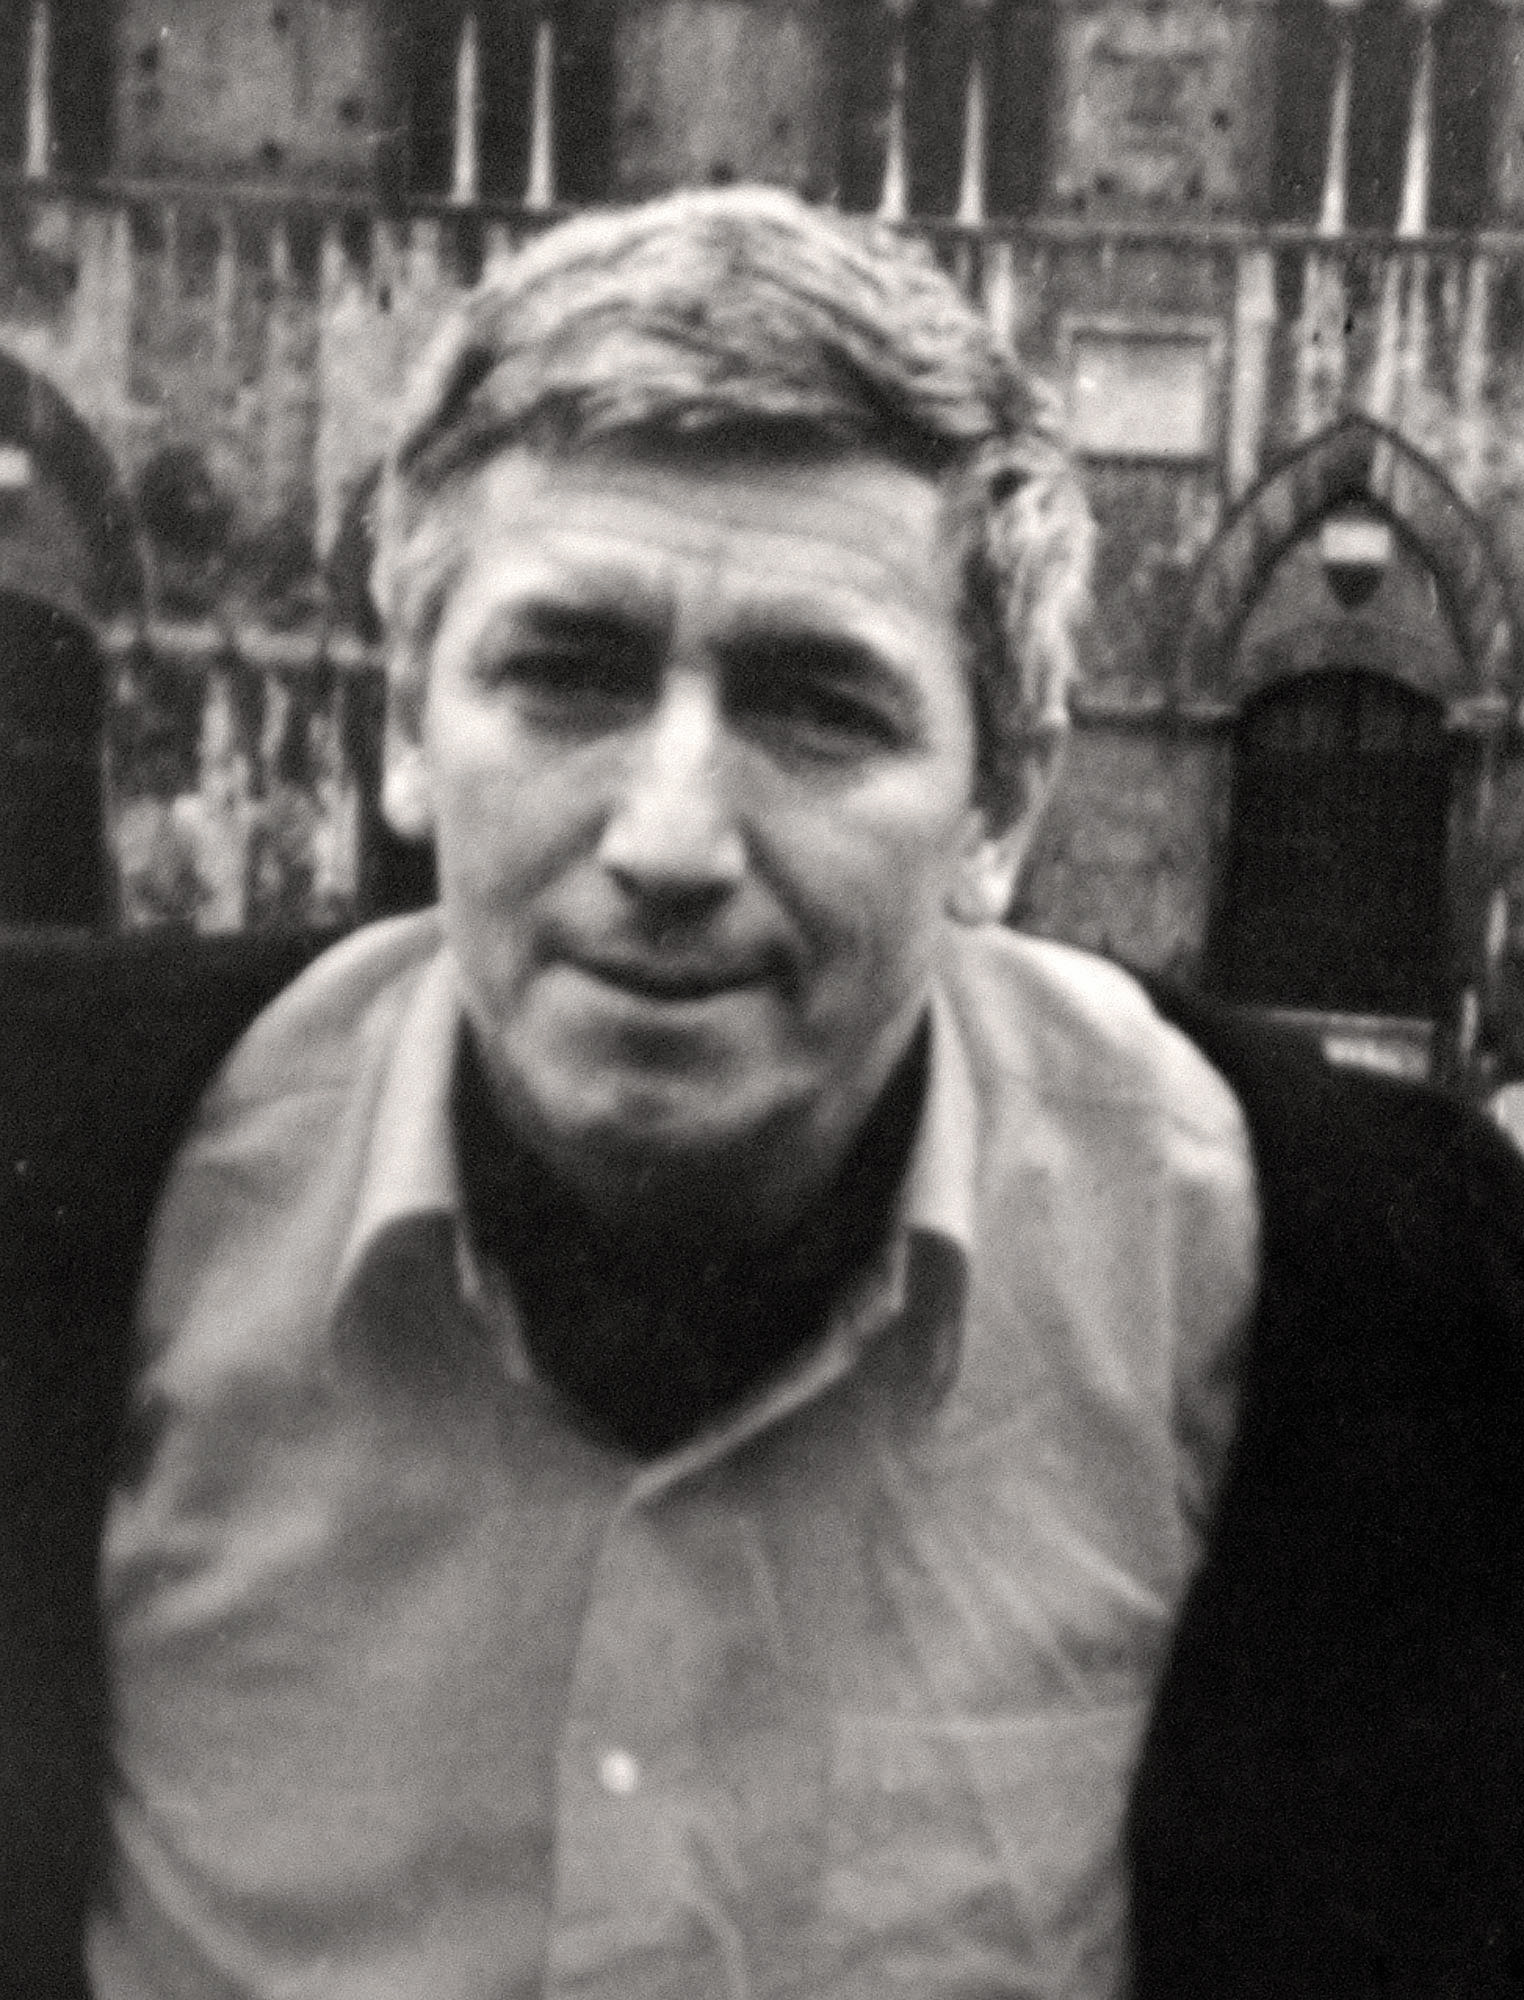 1978. gadā Londonā ar saindēta lietussarga palīdzību nogalināja bulgāru žurnālistu un disidentu Georgiju Markovu.